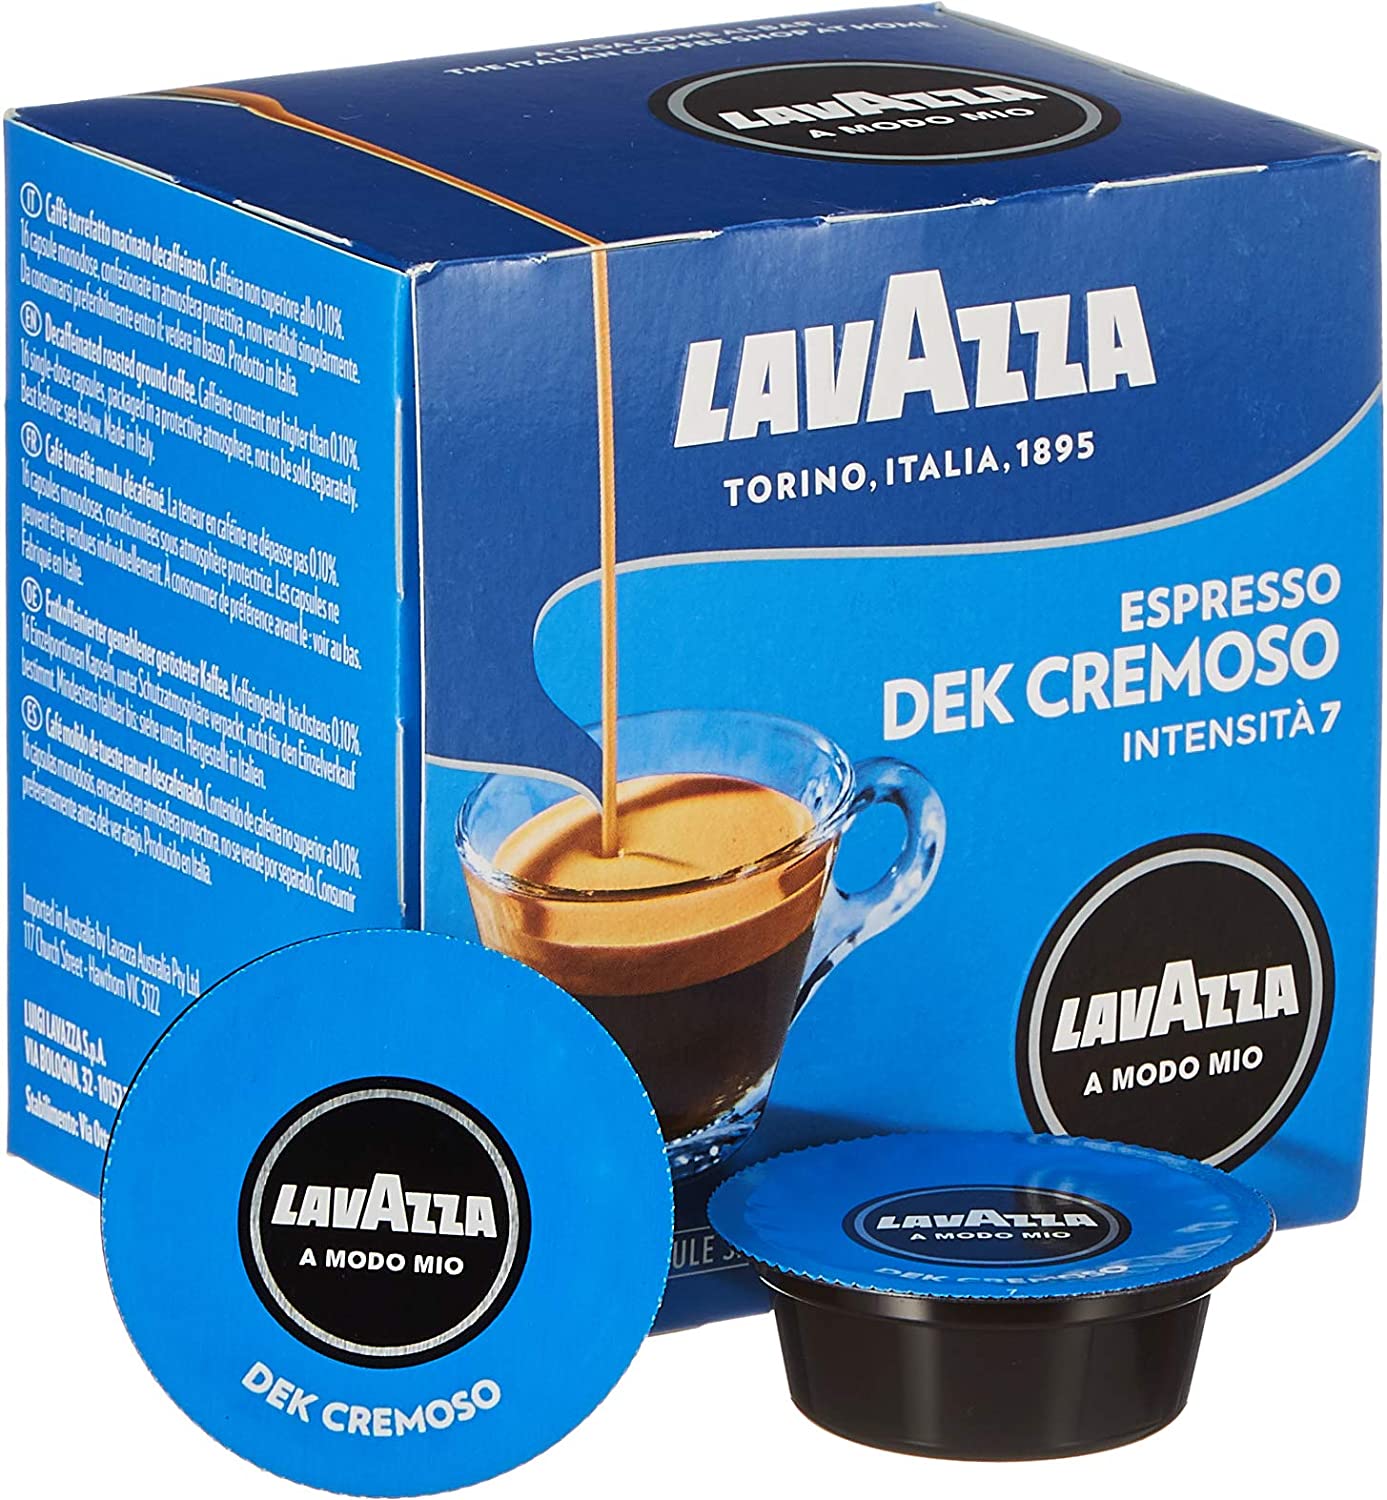 Lavazza A Modo Mio Espresso Coffee Cremoso Dek, Entkoff Einiert Coffee Capsules Arabica, 32 Capsules